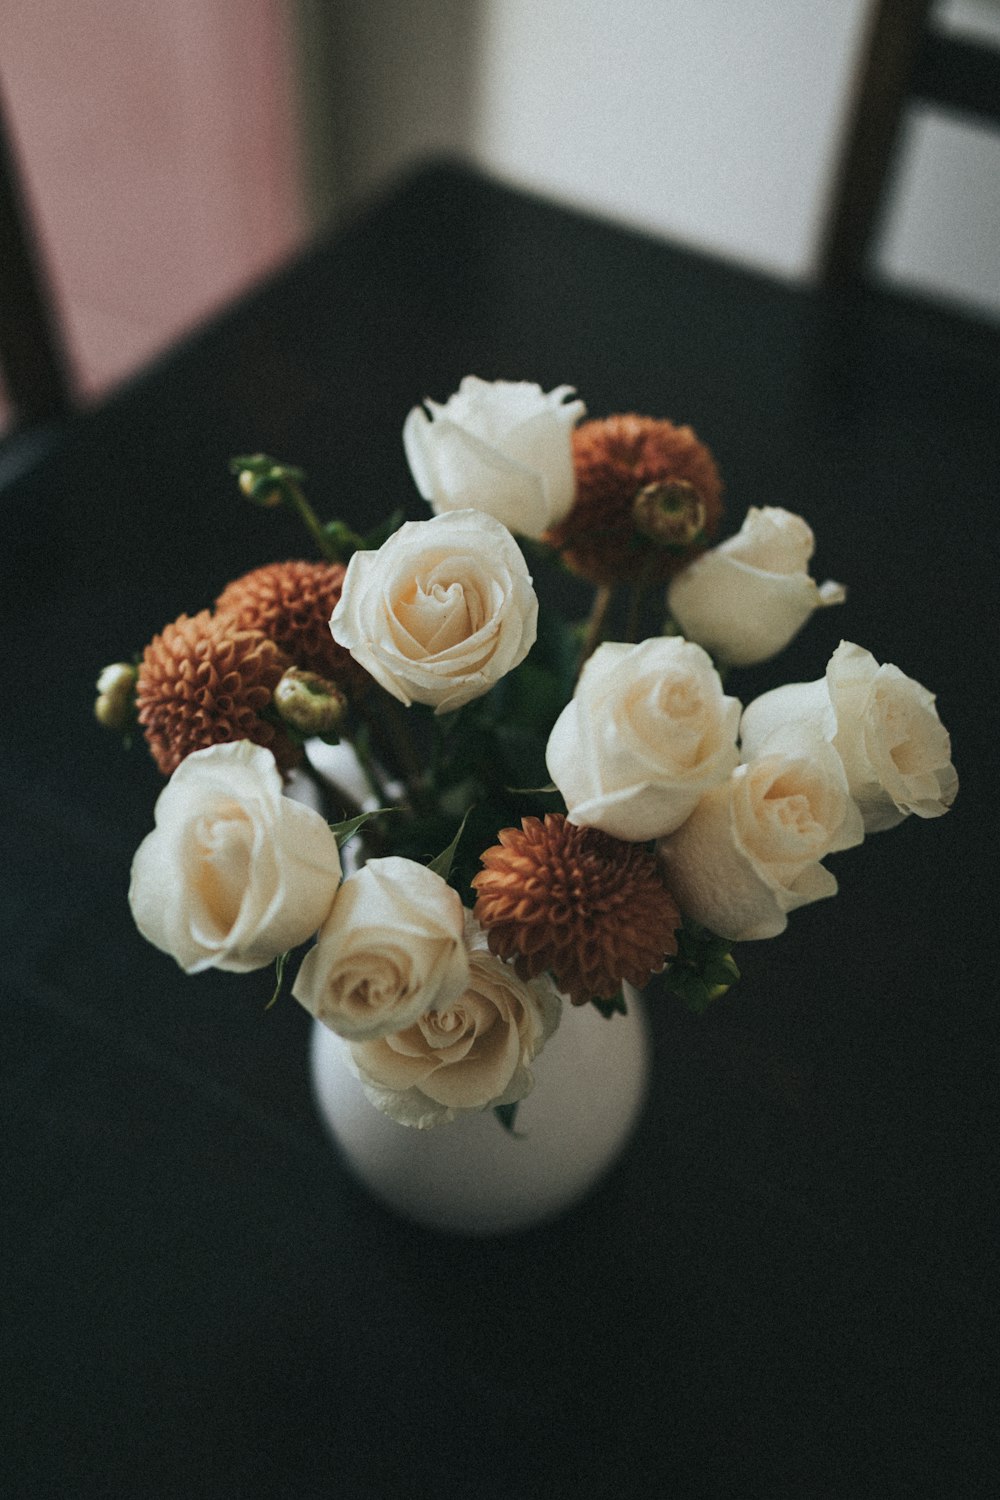 white and orange flower arrangement in white ceramic vase on table